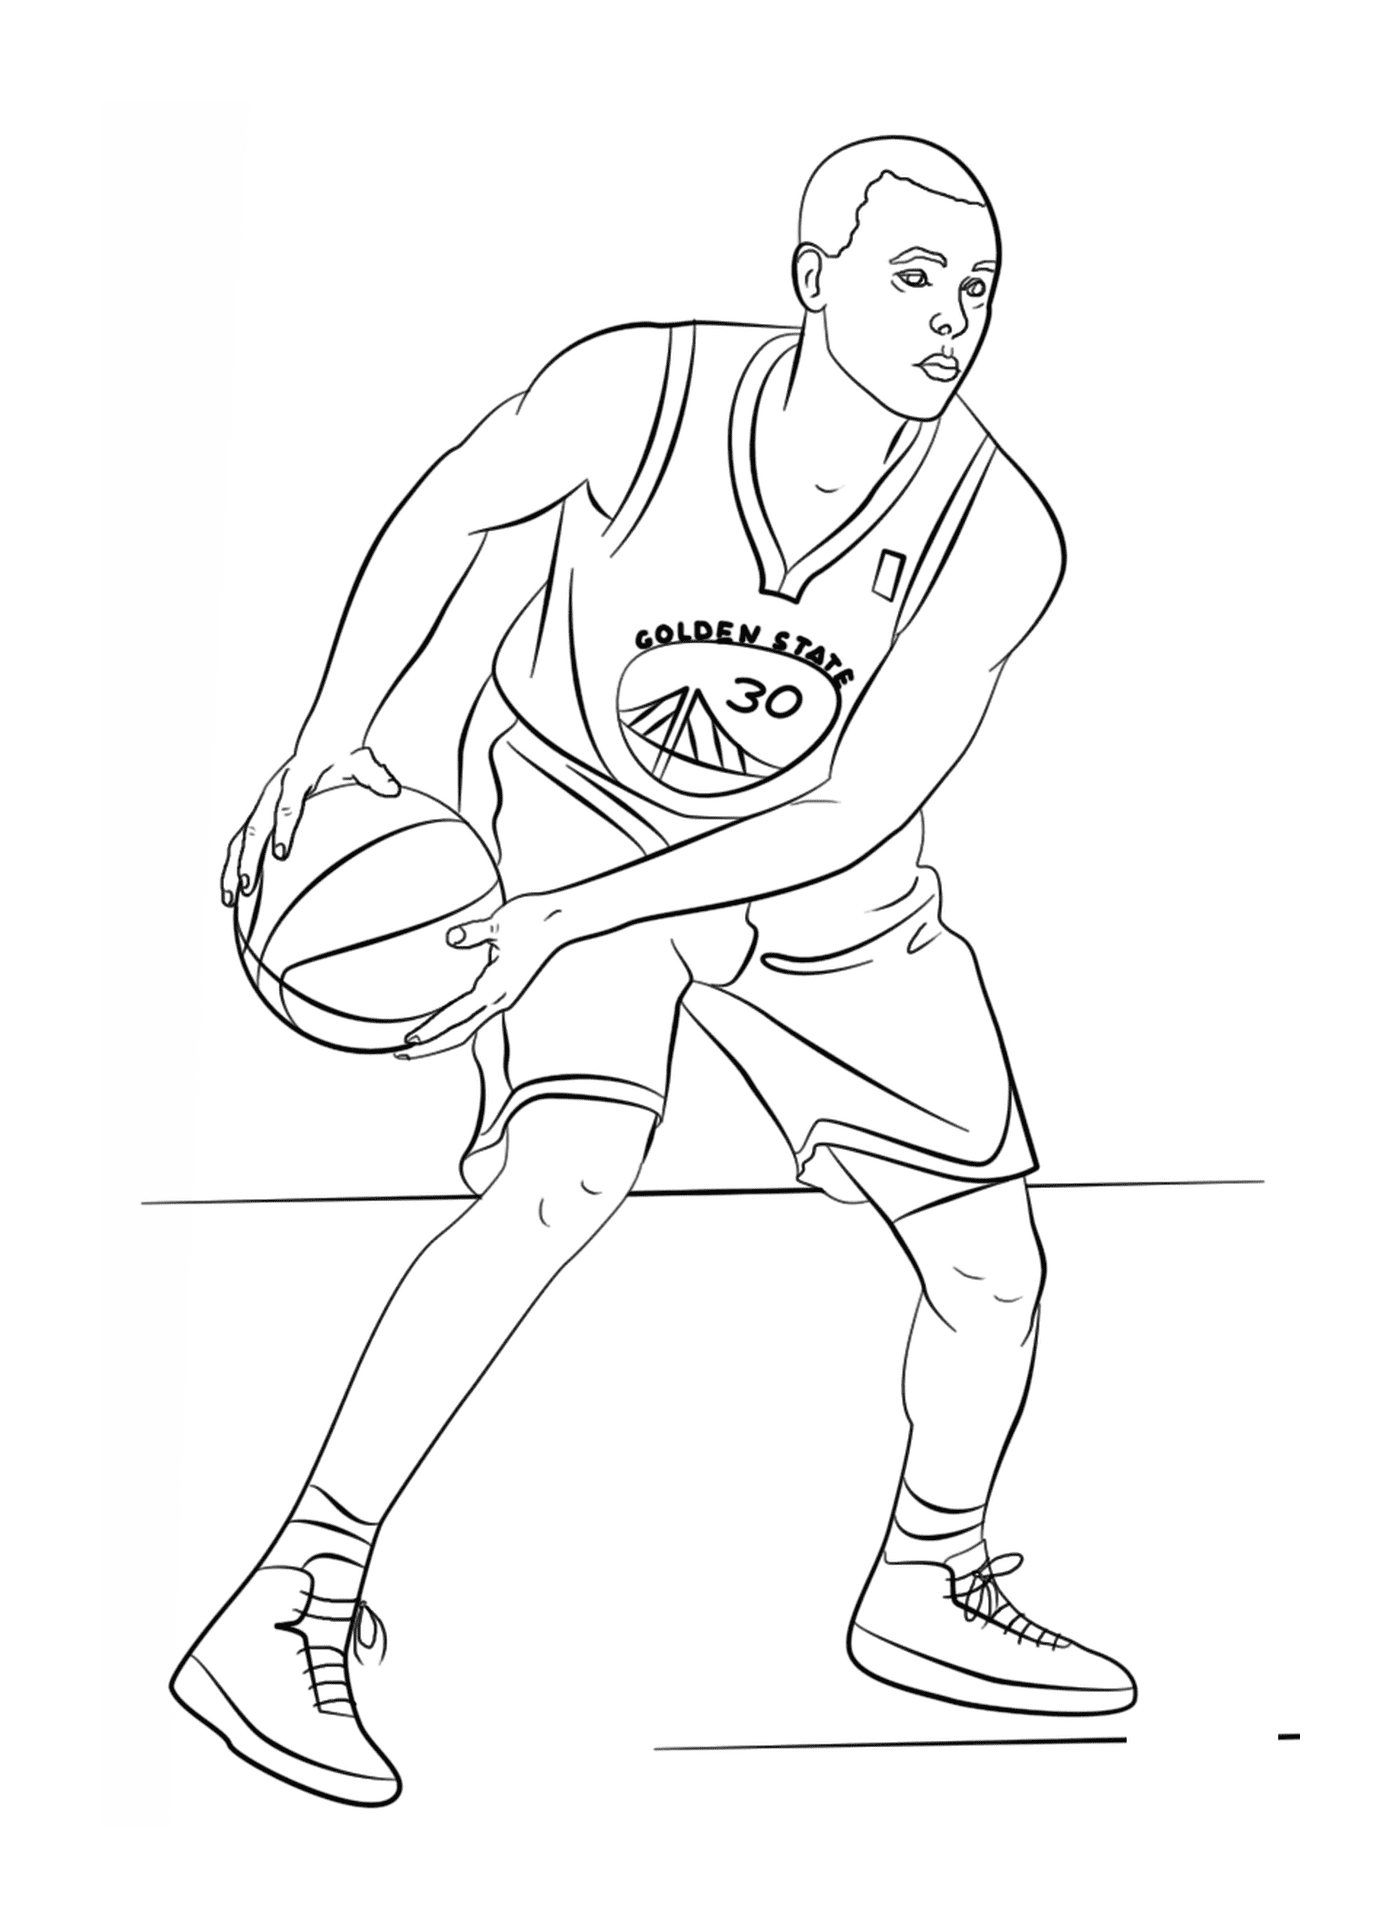  Stephen Curry, NBA basketball player 